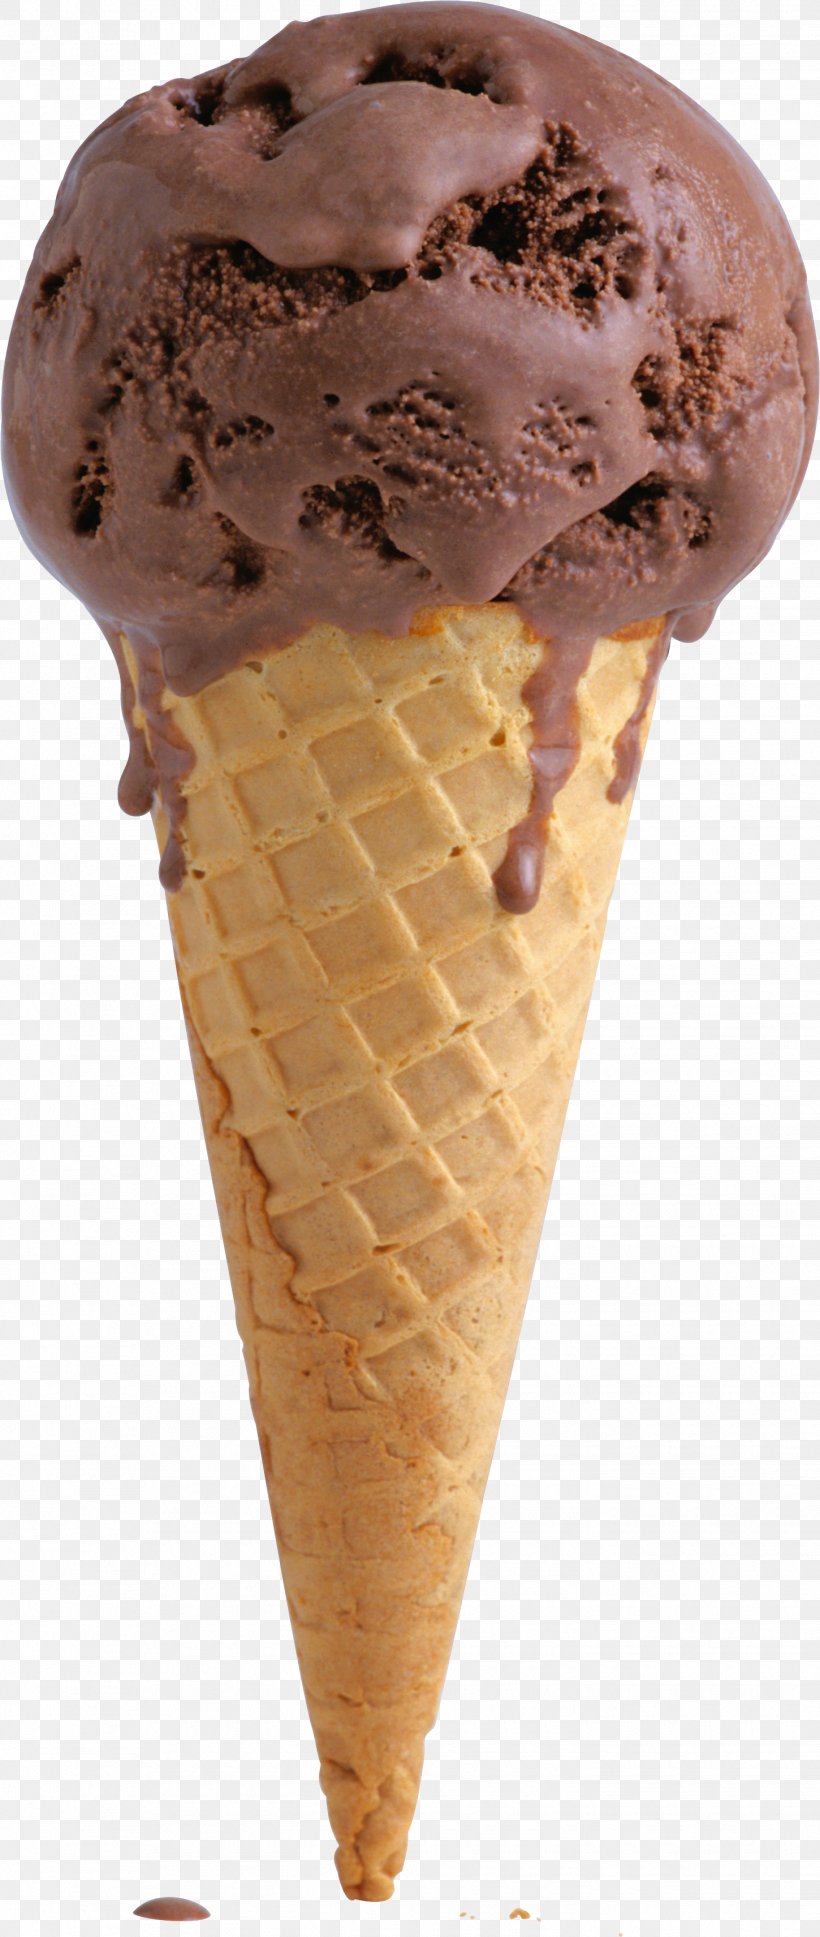 Chocolate Ice Cream Milkshake Ice Cream Cone, PNG, 1450x3426px, Ice Cream, Chocolate, Chocolate Ice Cream, Chocolate Truffle, Cream Download Free